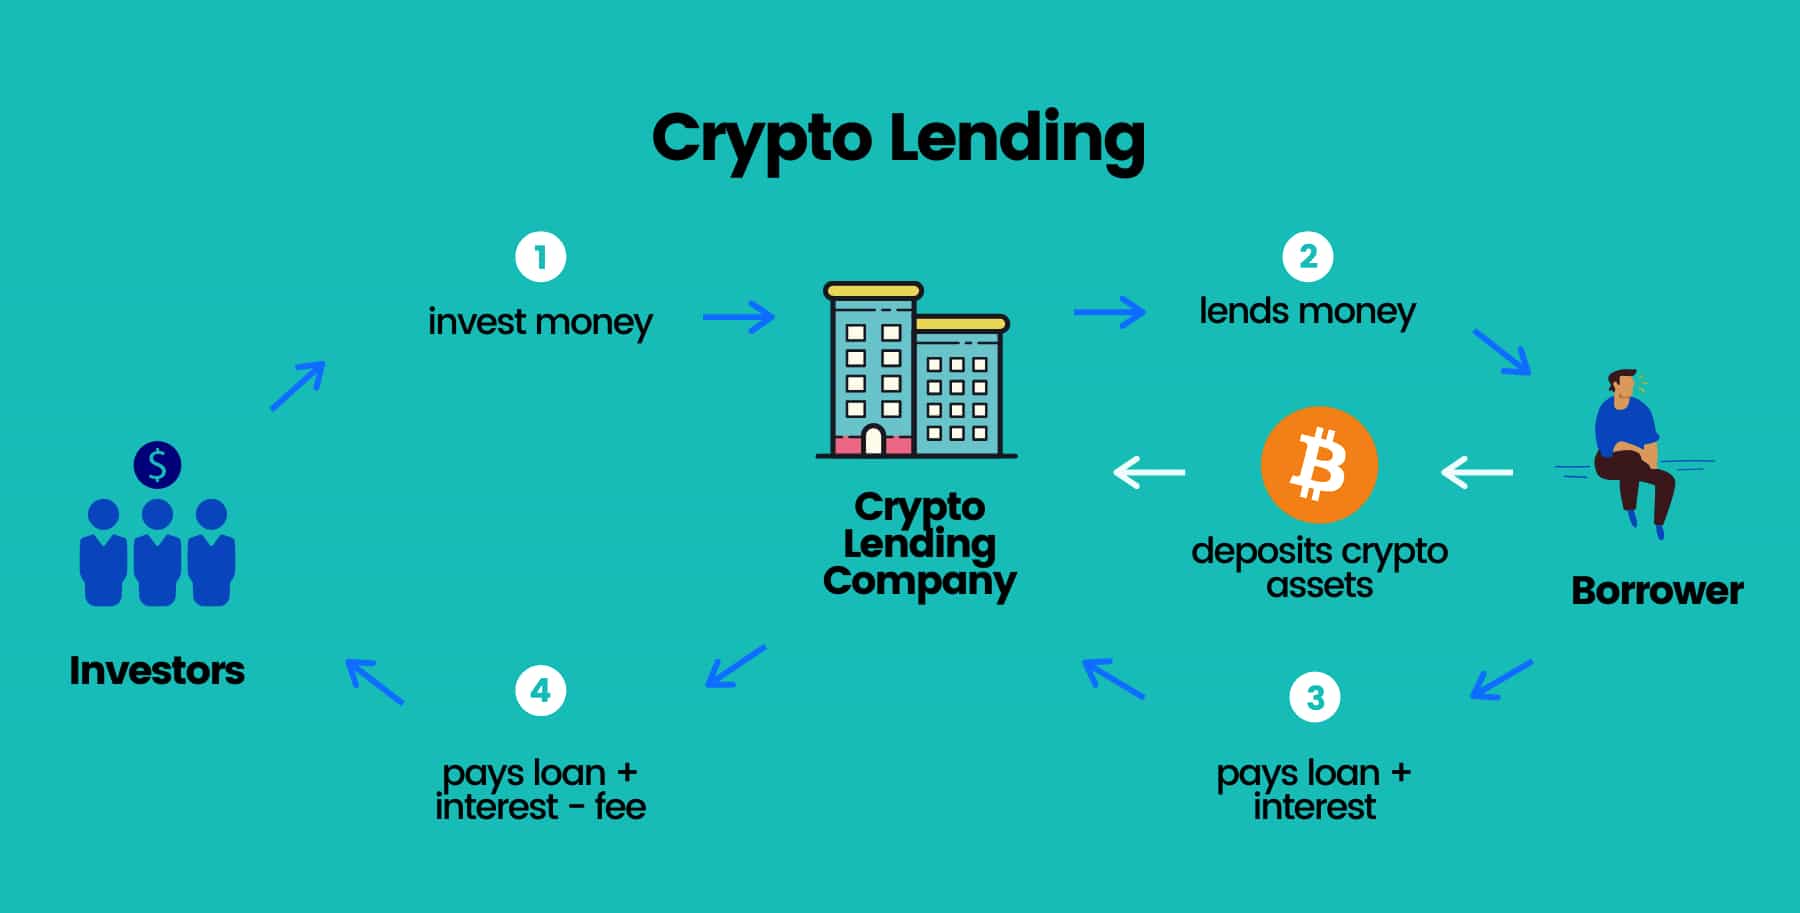 compound crypto lending